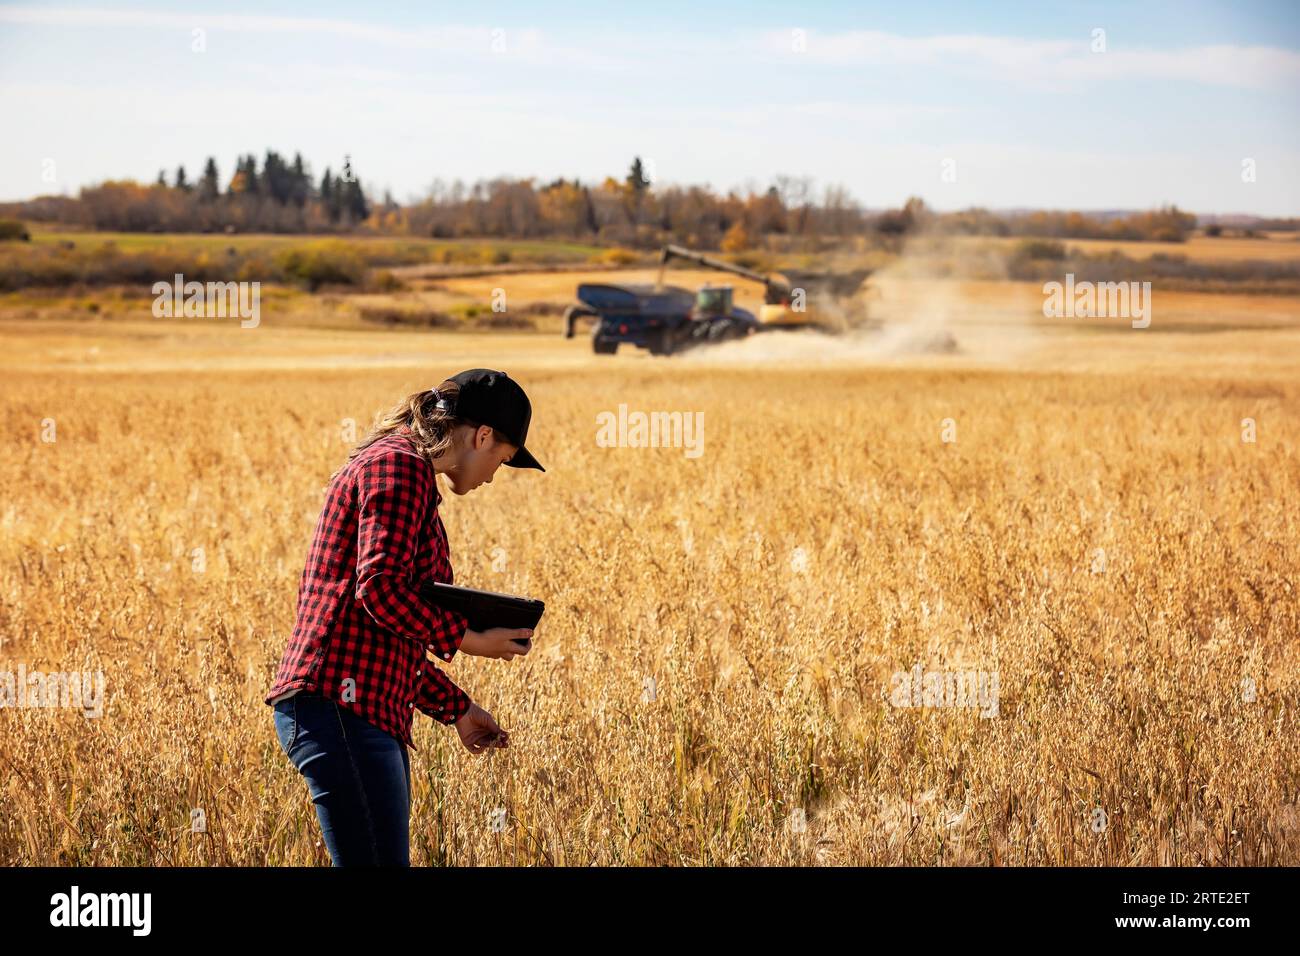 Una giovane donna agricola esamina il raccolto di grano durante il raccolto utilizzando tecnologie software agricole avanzate su un tampone, con una mietitrebbia o... Foto Stock